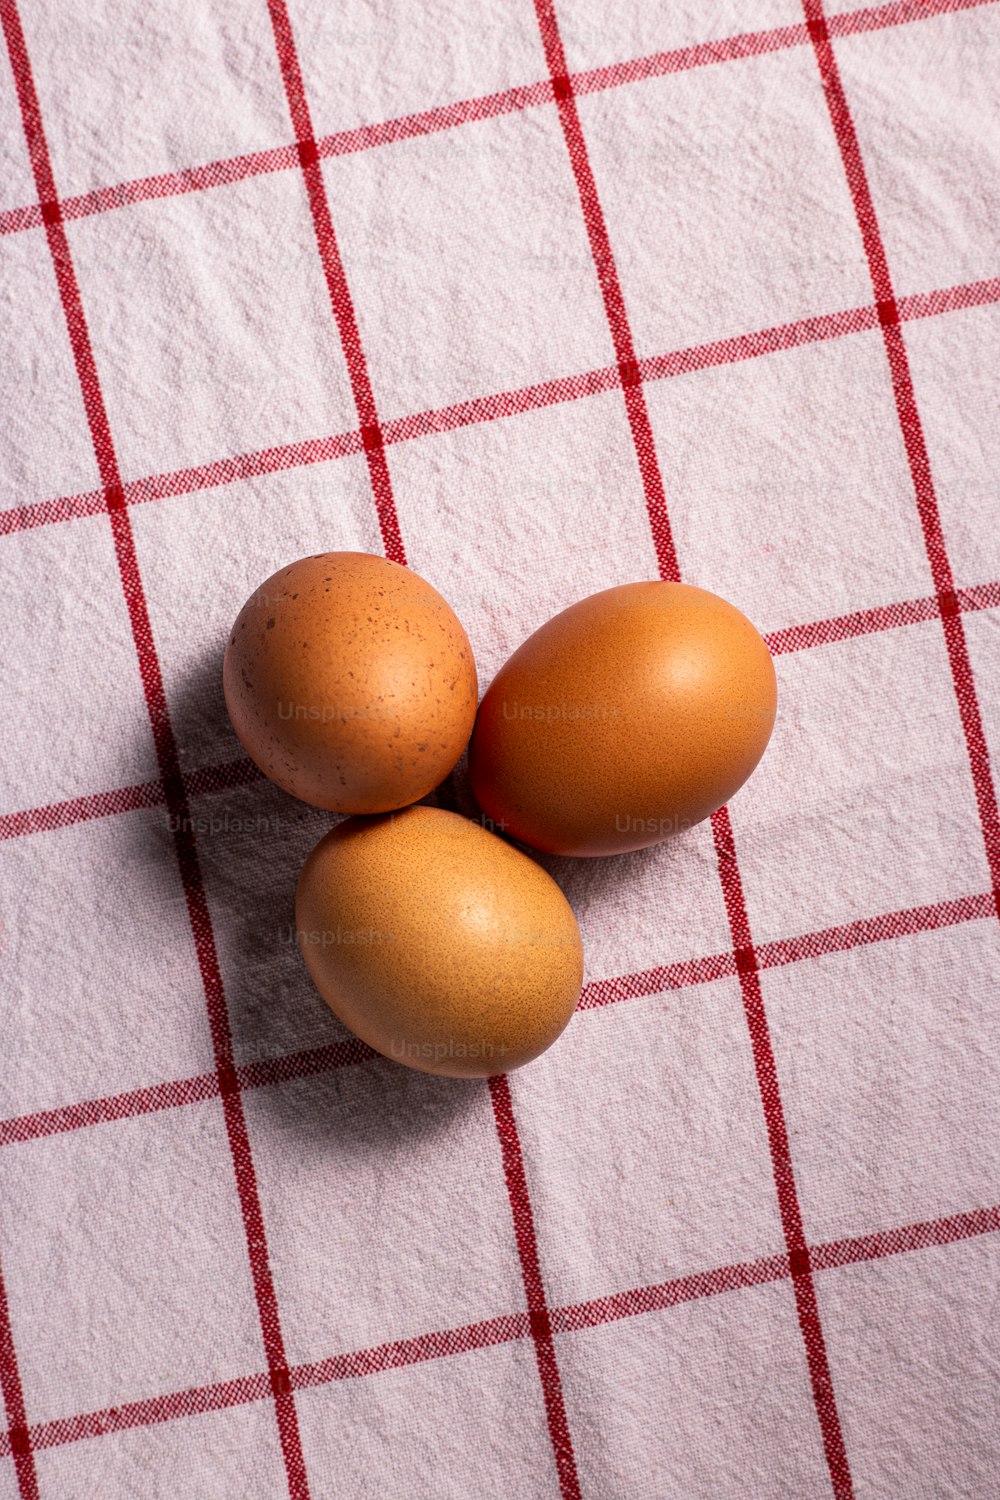 Tre uova marroni su una tovaglia a scacchi rossi e bianchi